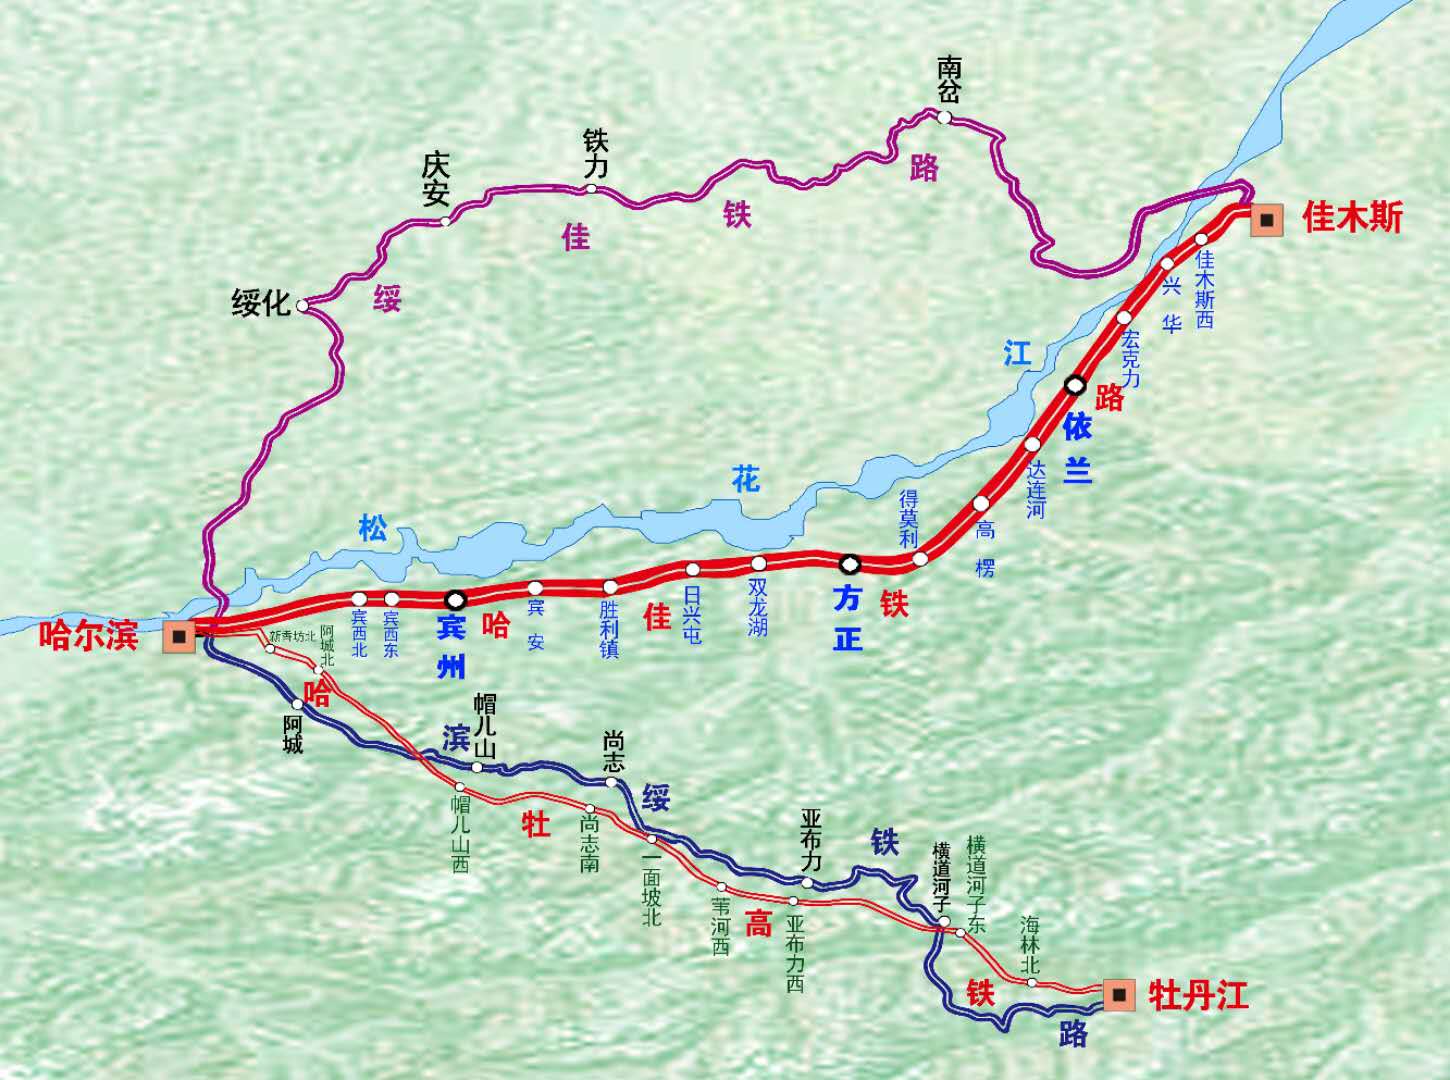 世界最长高寒地区快速铁路——哈佳铁路将正式开通,此图为列车线路图.图片